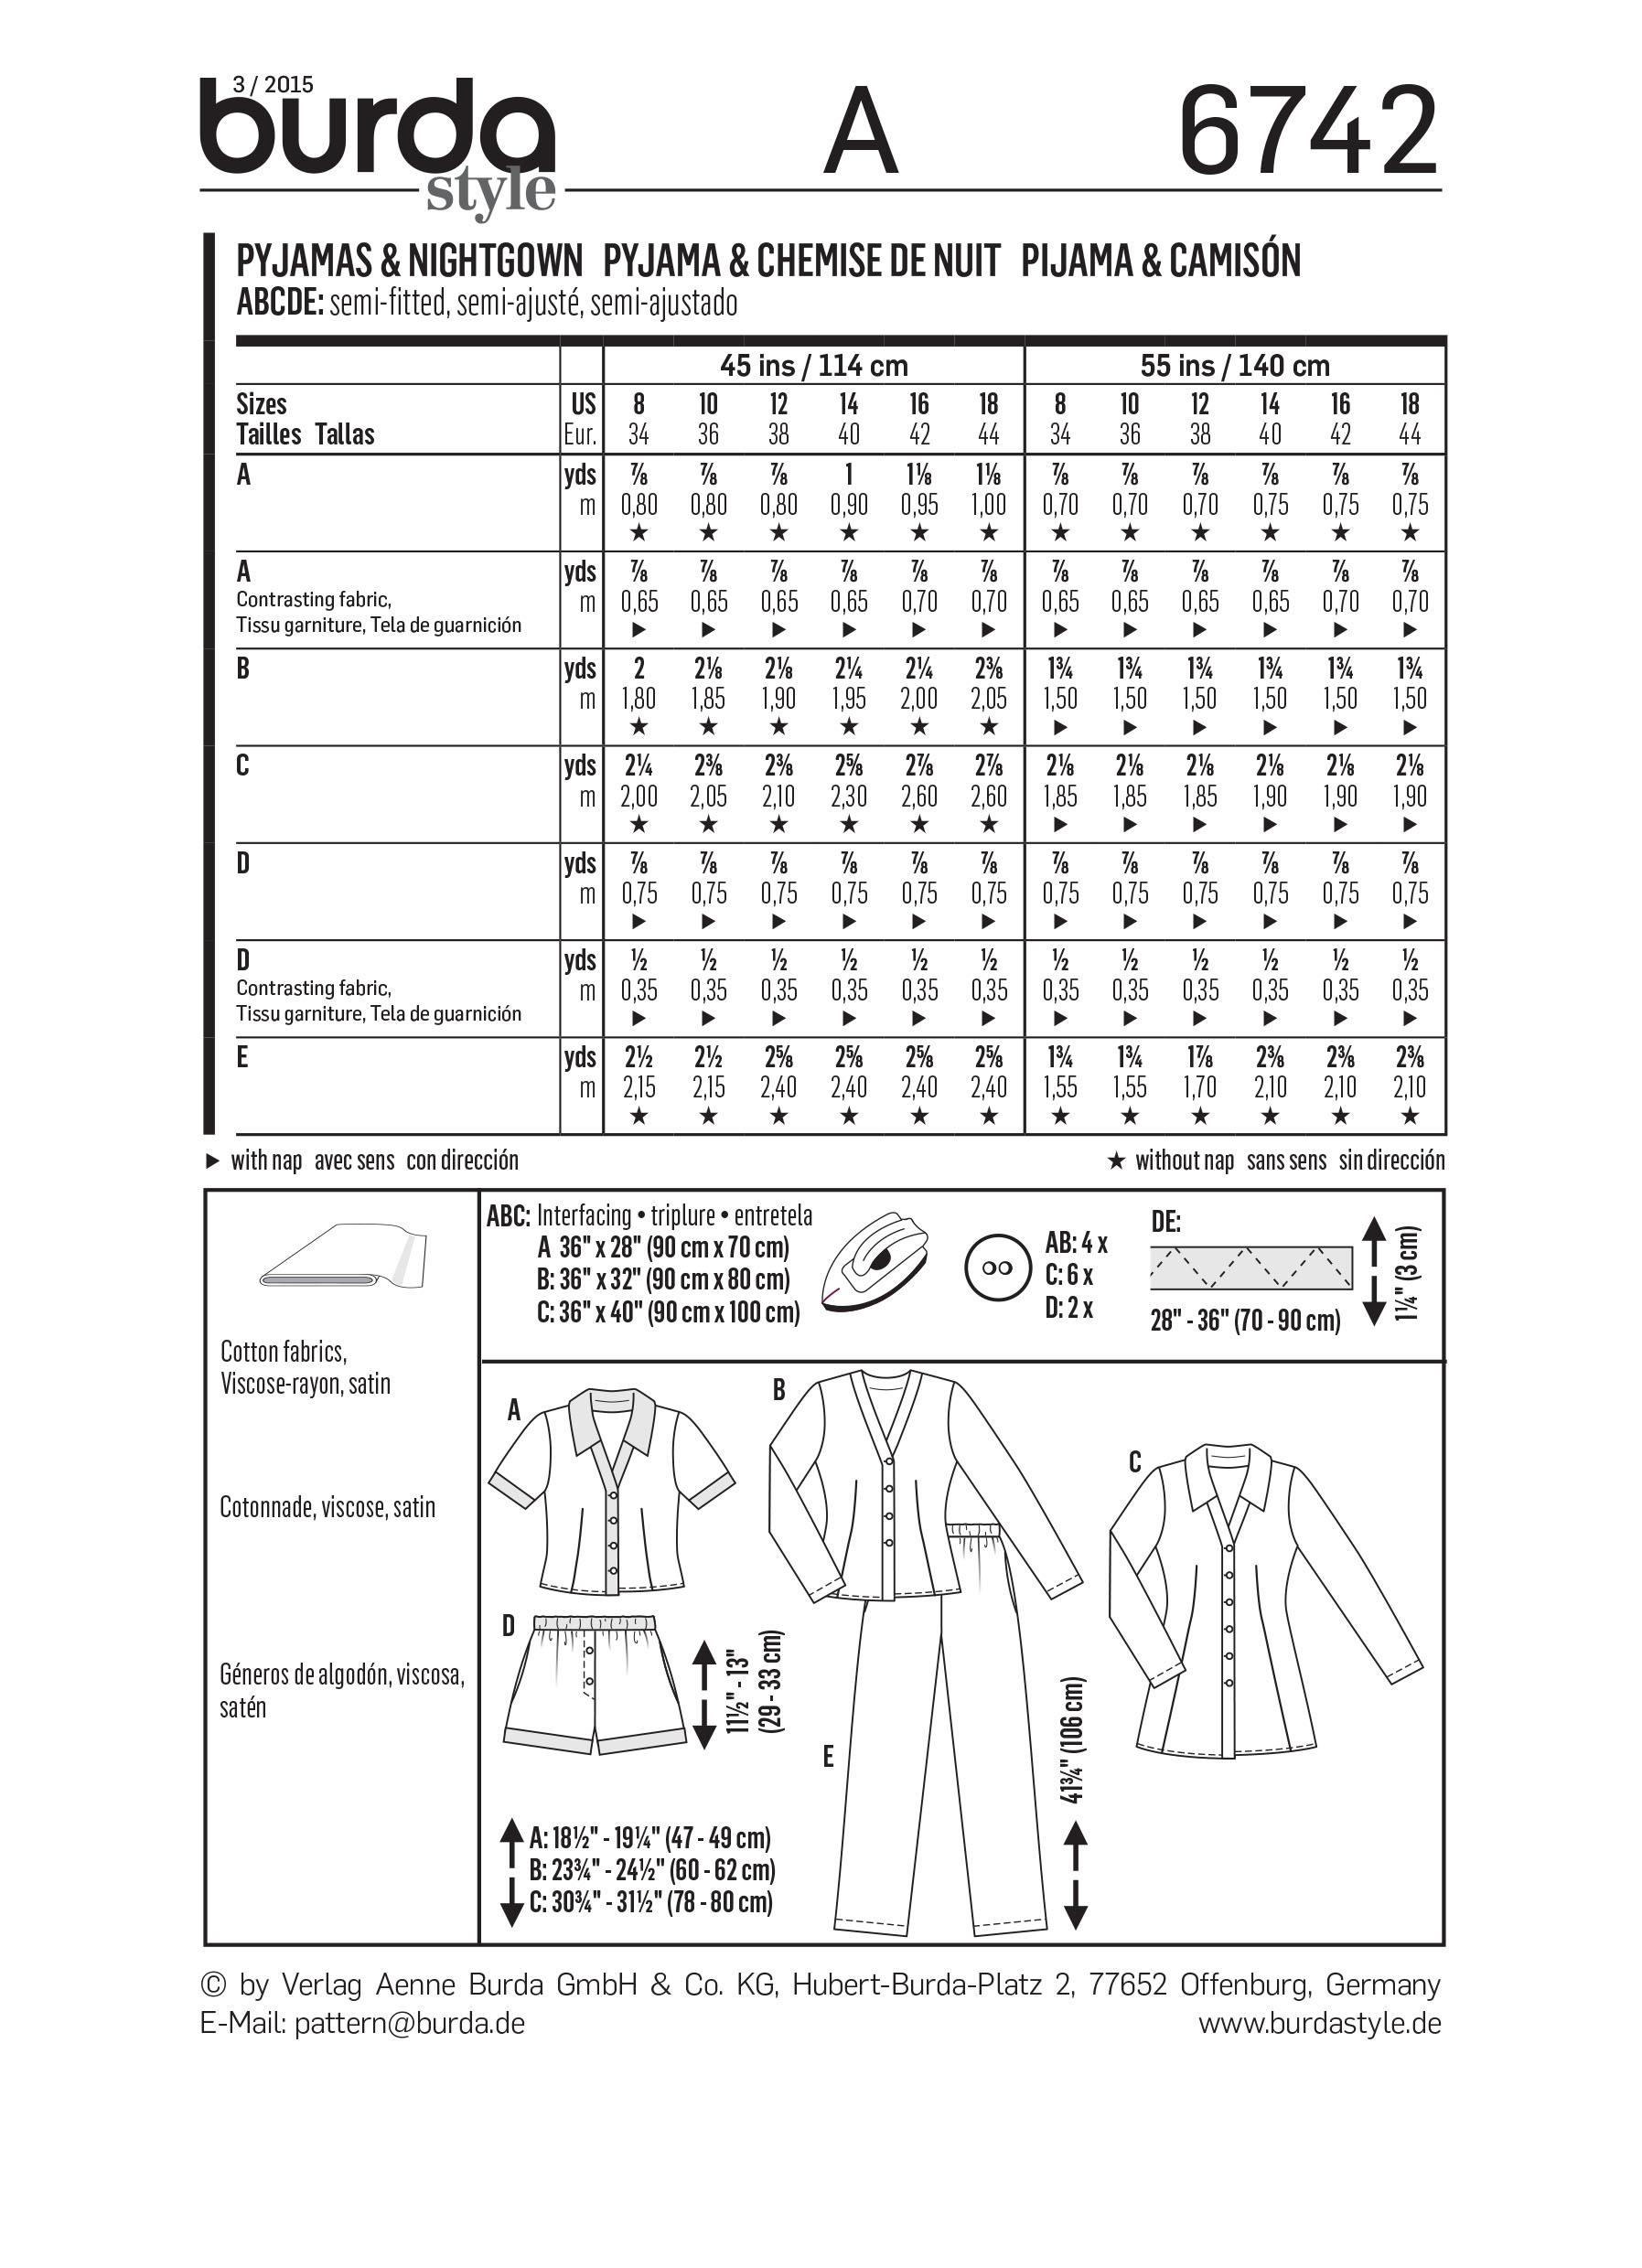 Burda B6742 Women's Sleepwear Sewing Pattern